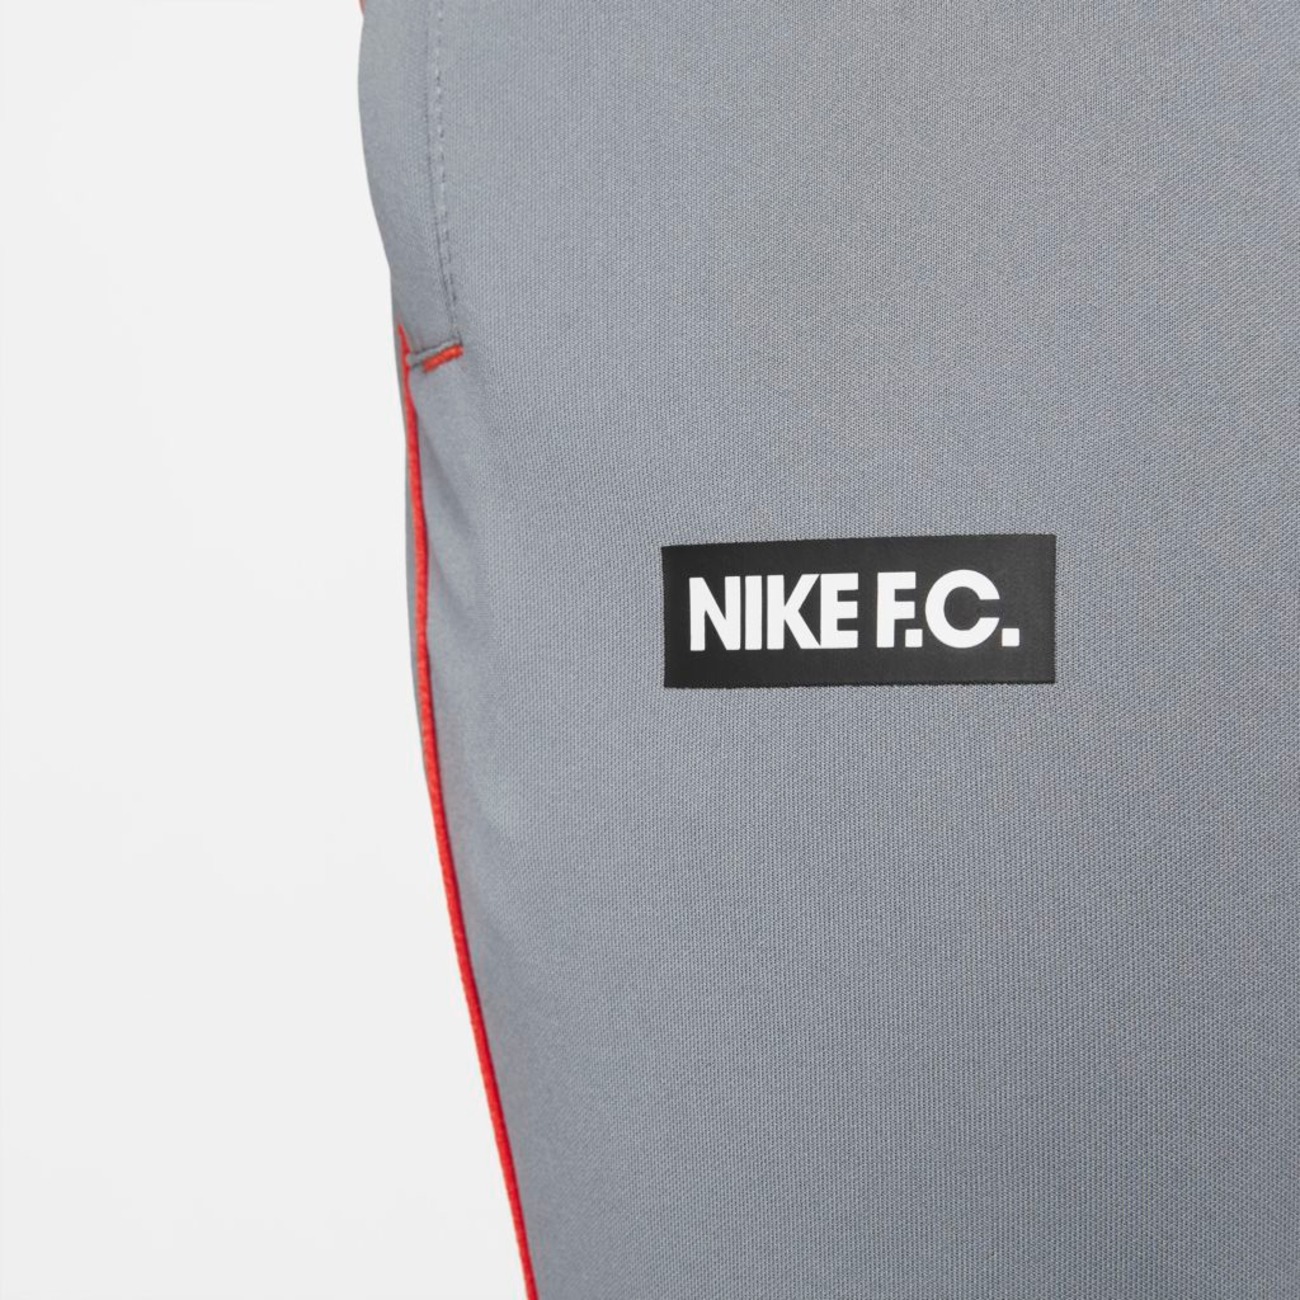 Calça Nike Dri-FIT F.C Libero Masculina - Foto 4